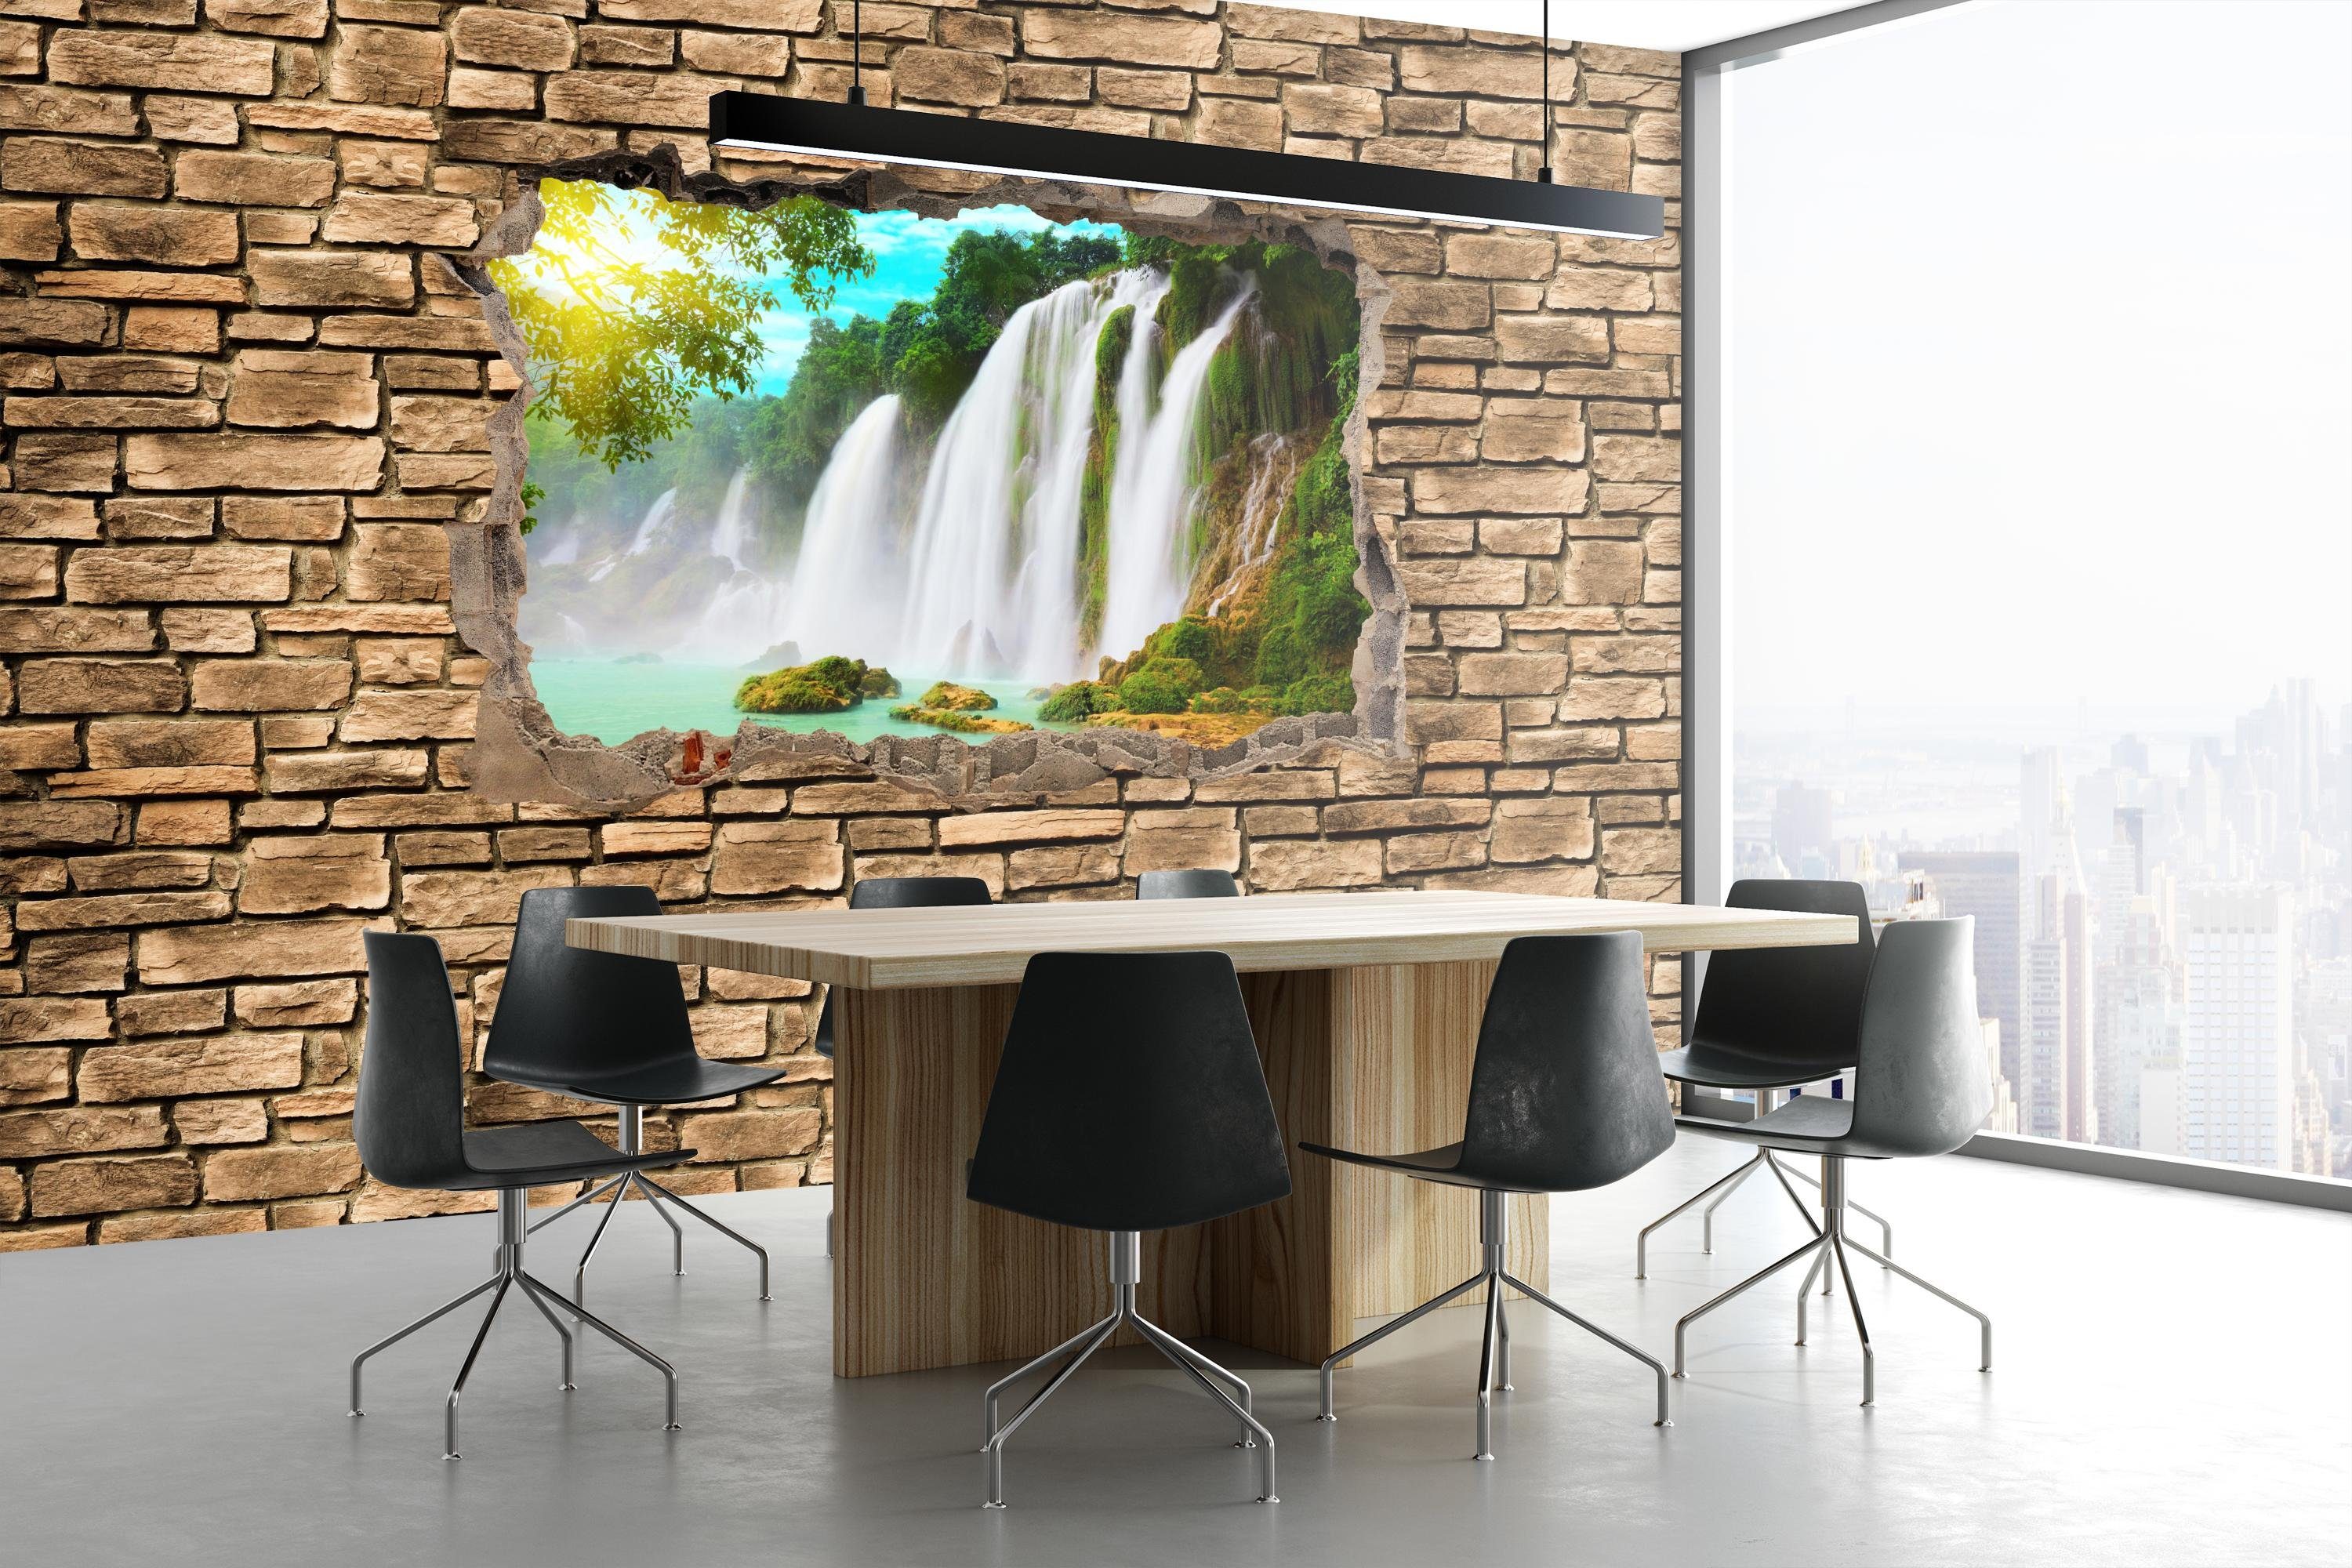 wandmotiv24 Fototapete 3D Wasserfall - Vliestapete Wandtapete, Steinmauer, glatt, matt, Motivtapete